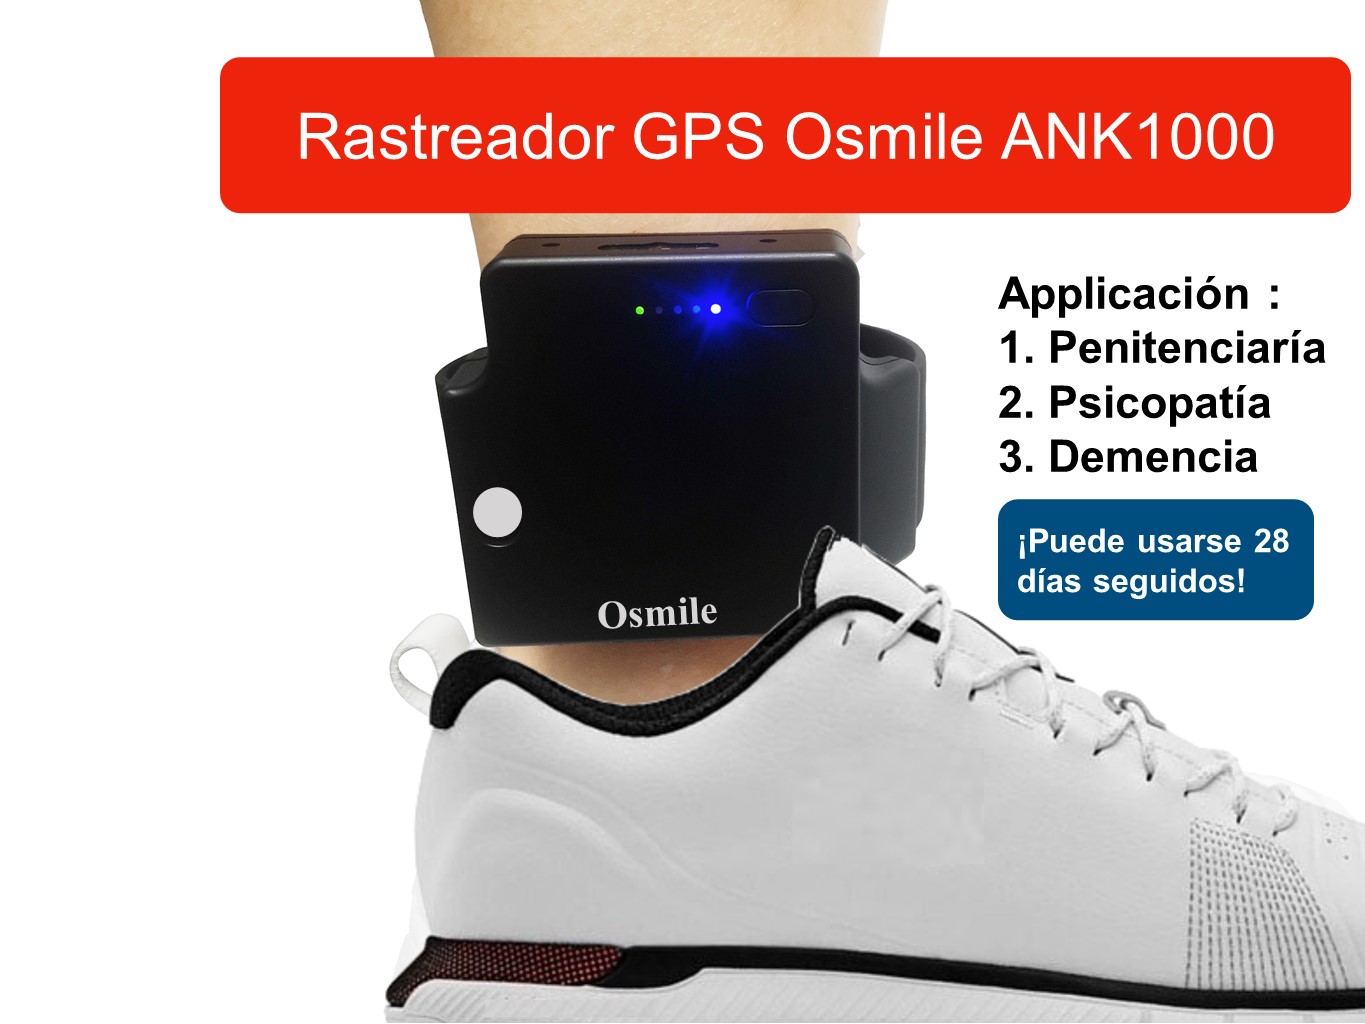 Osmile ANK1000 - Rastreador GPS para pacientes en prisión, cuarentena, psicopatía, demencia y Alzheimer - JC